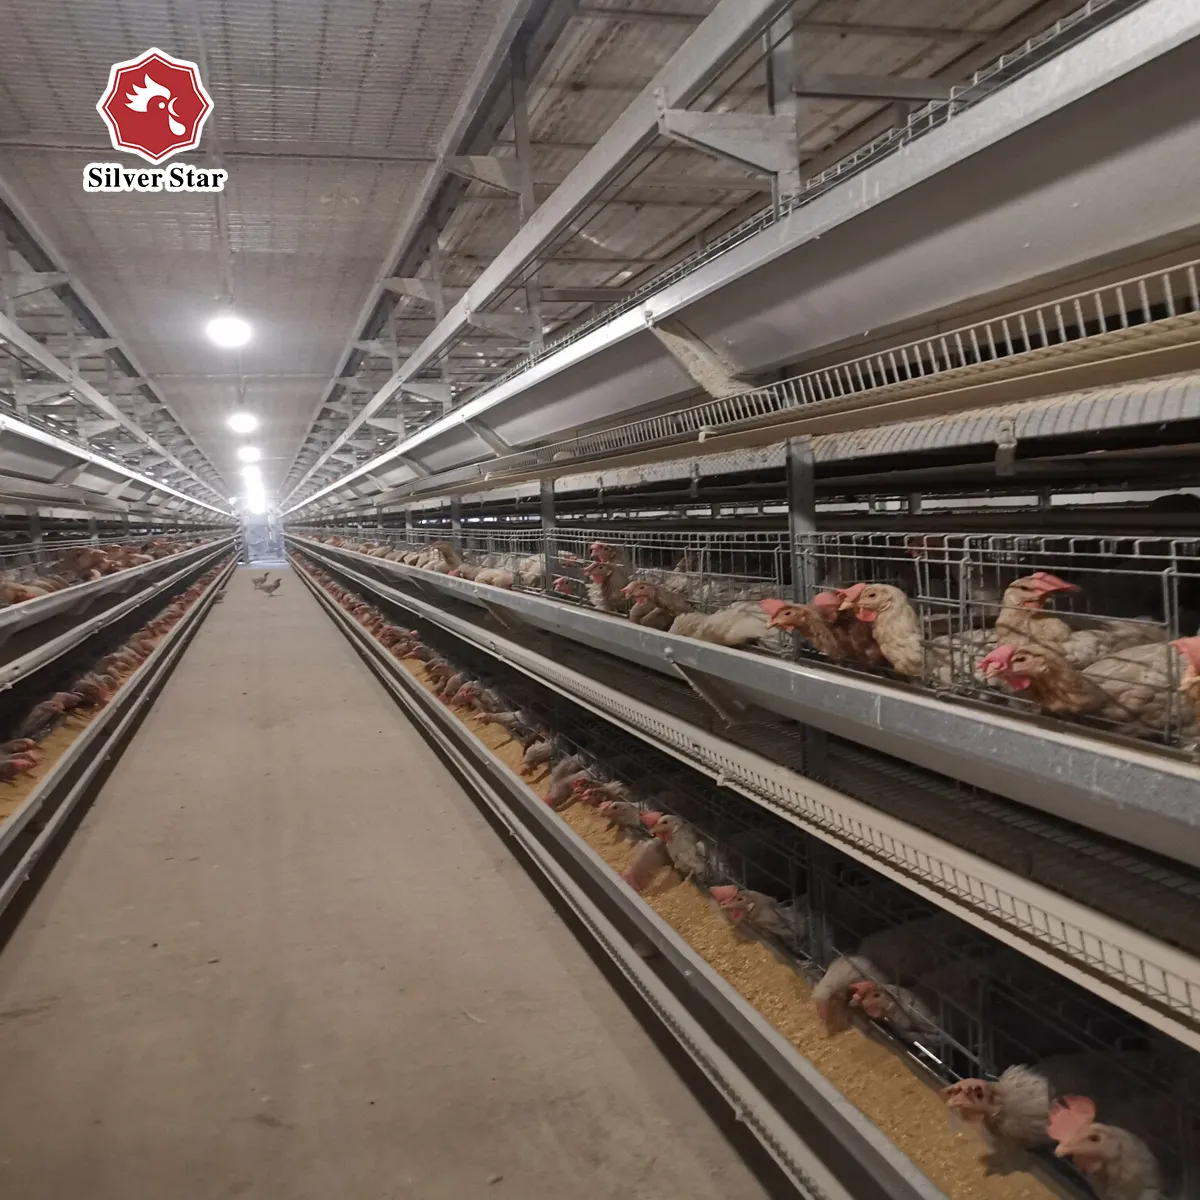 सिल्वर स्टार फिलीपींस में बिक्री के लिए स्वत: चिकन परत पिंजरे